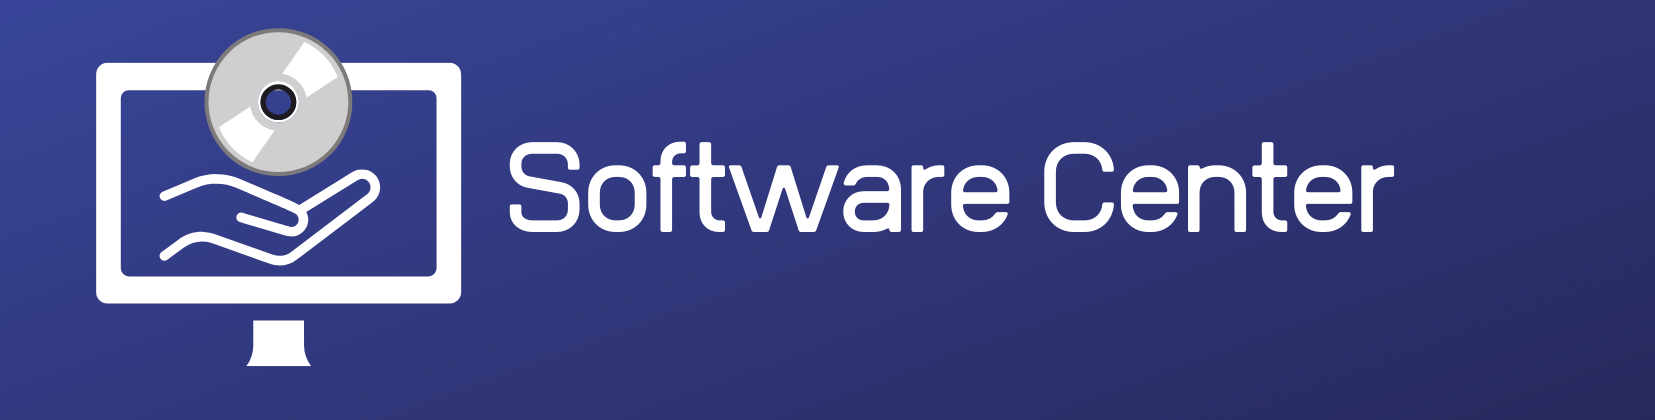 Software Center Software Banner